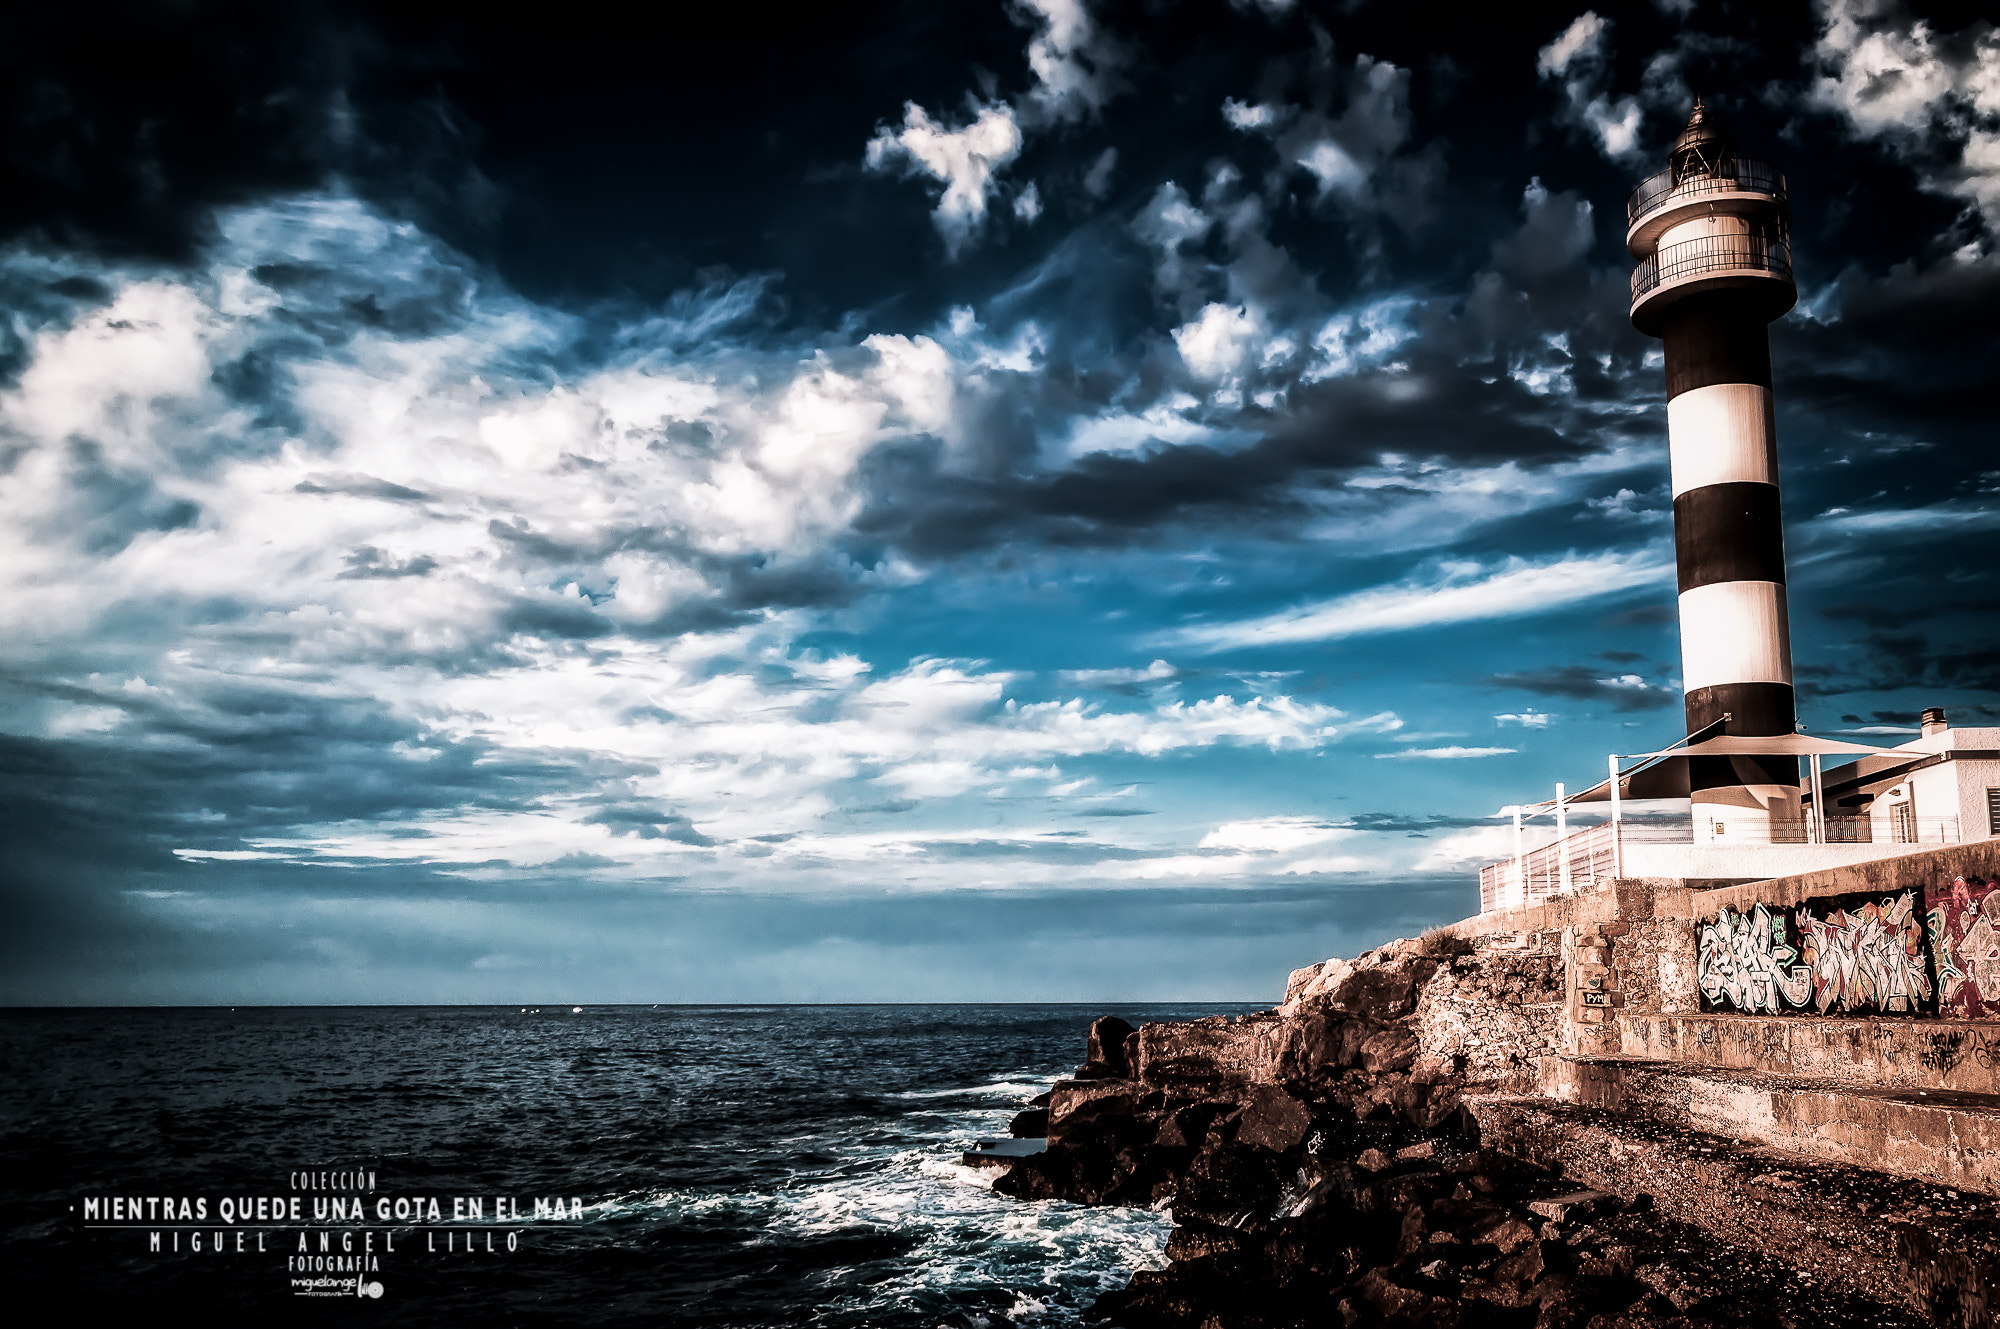 Nikon D3200 sample photo. Colección "mientras quede una gota en el mar" - fotografía #6 photography